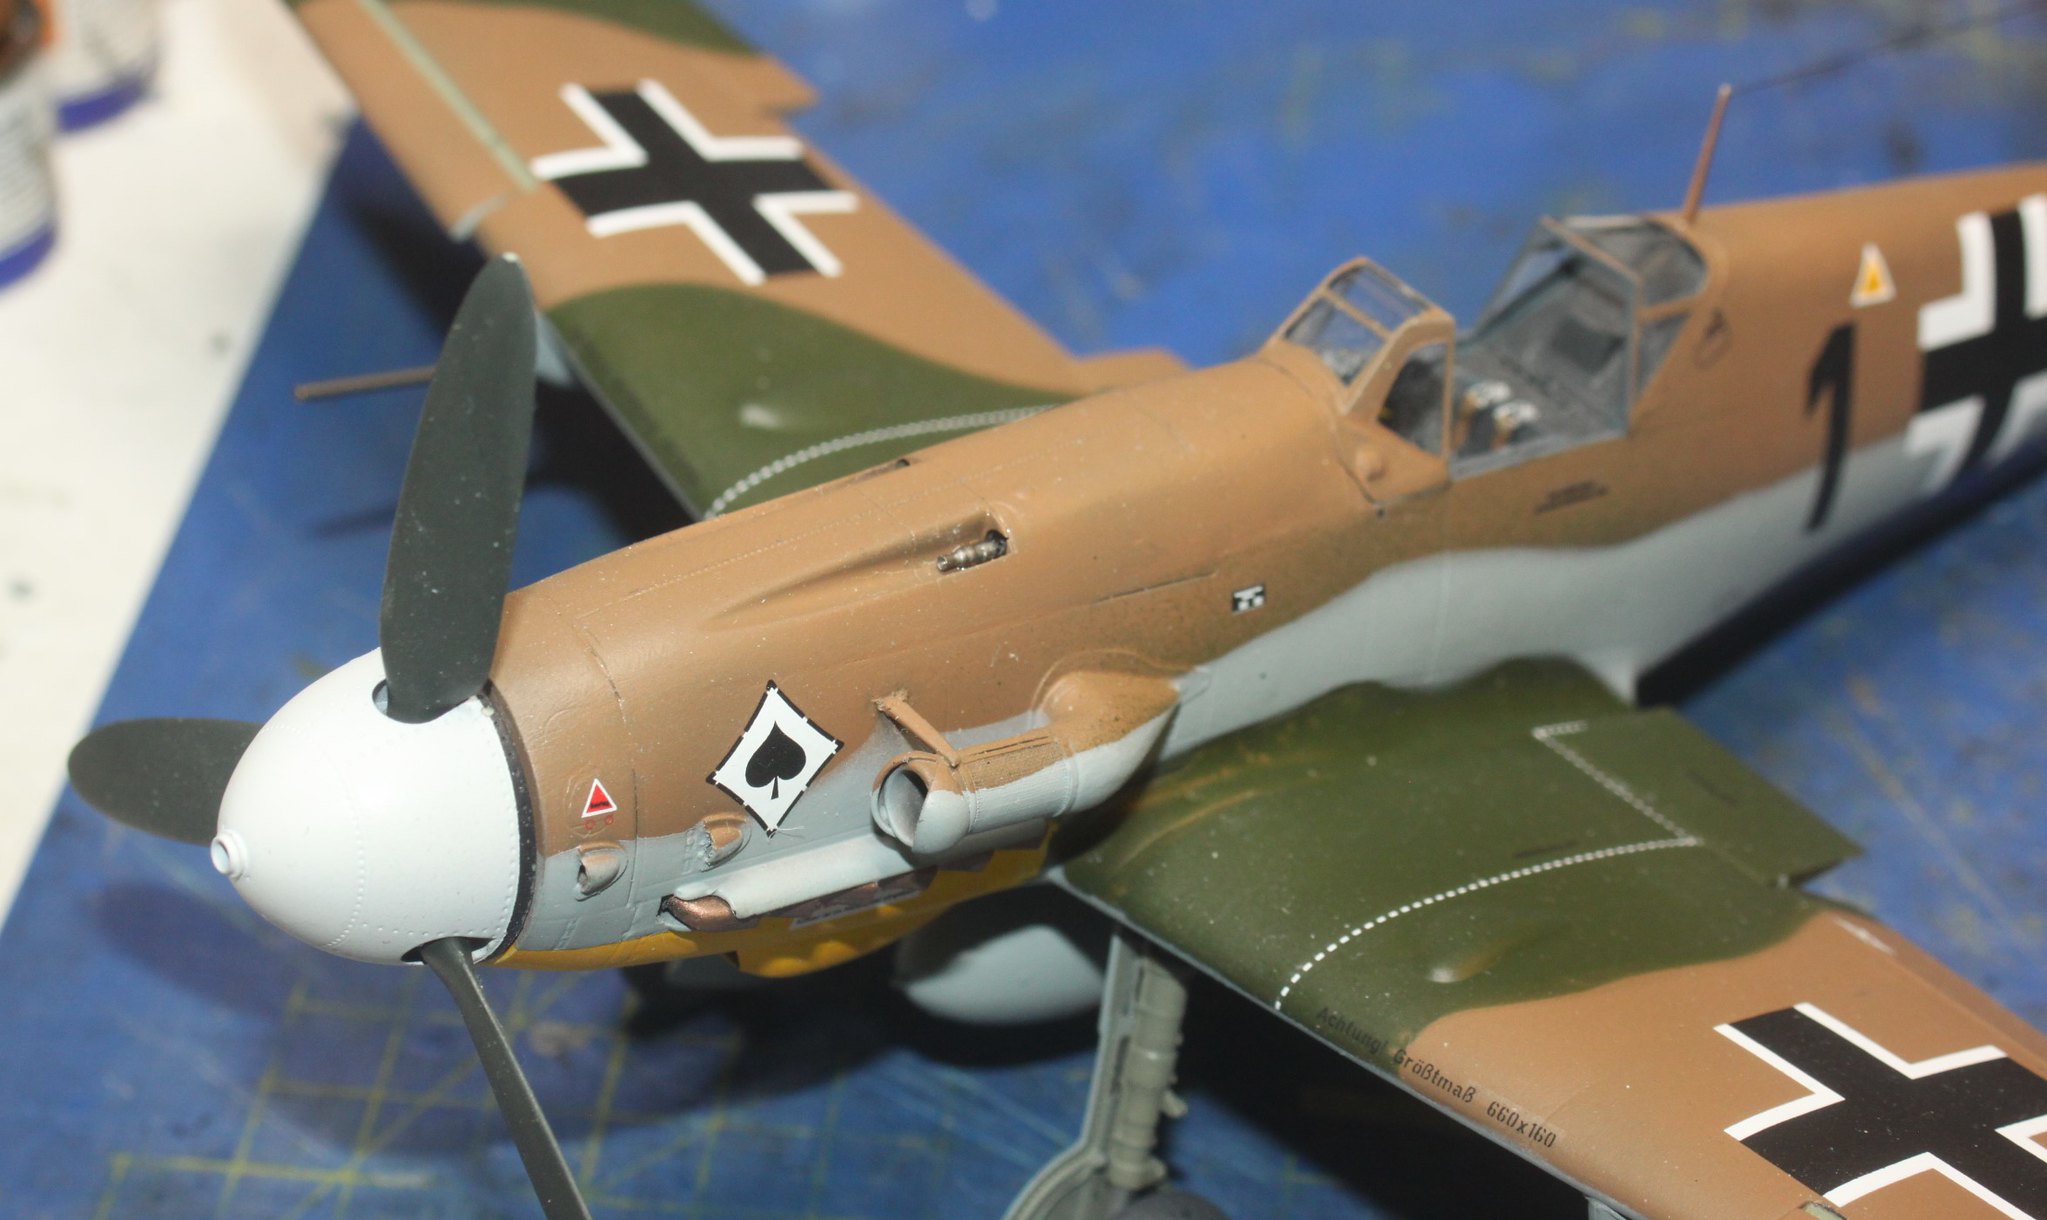 Messerschmitt Bf109G-2, Messerschmitt Bf109G-2, Oblt. Franz Scheiss, 8. JG53 "Pik Ass", Revell 1/32 52508090313_e873e05266_k